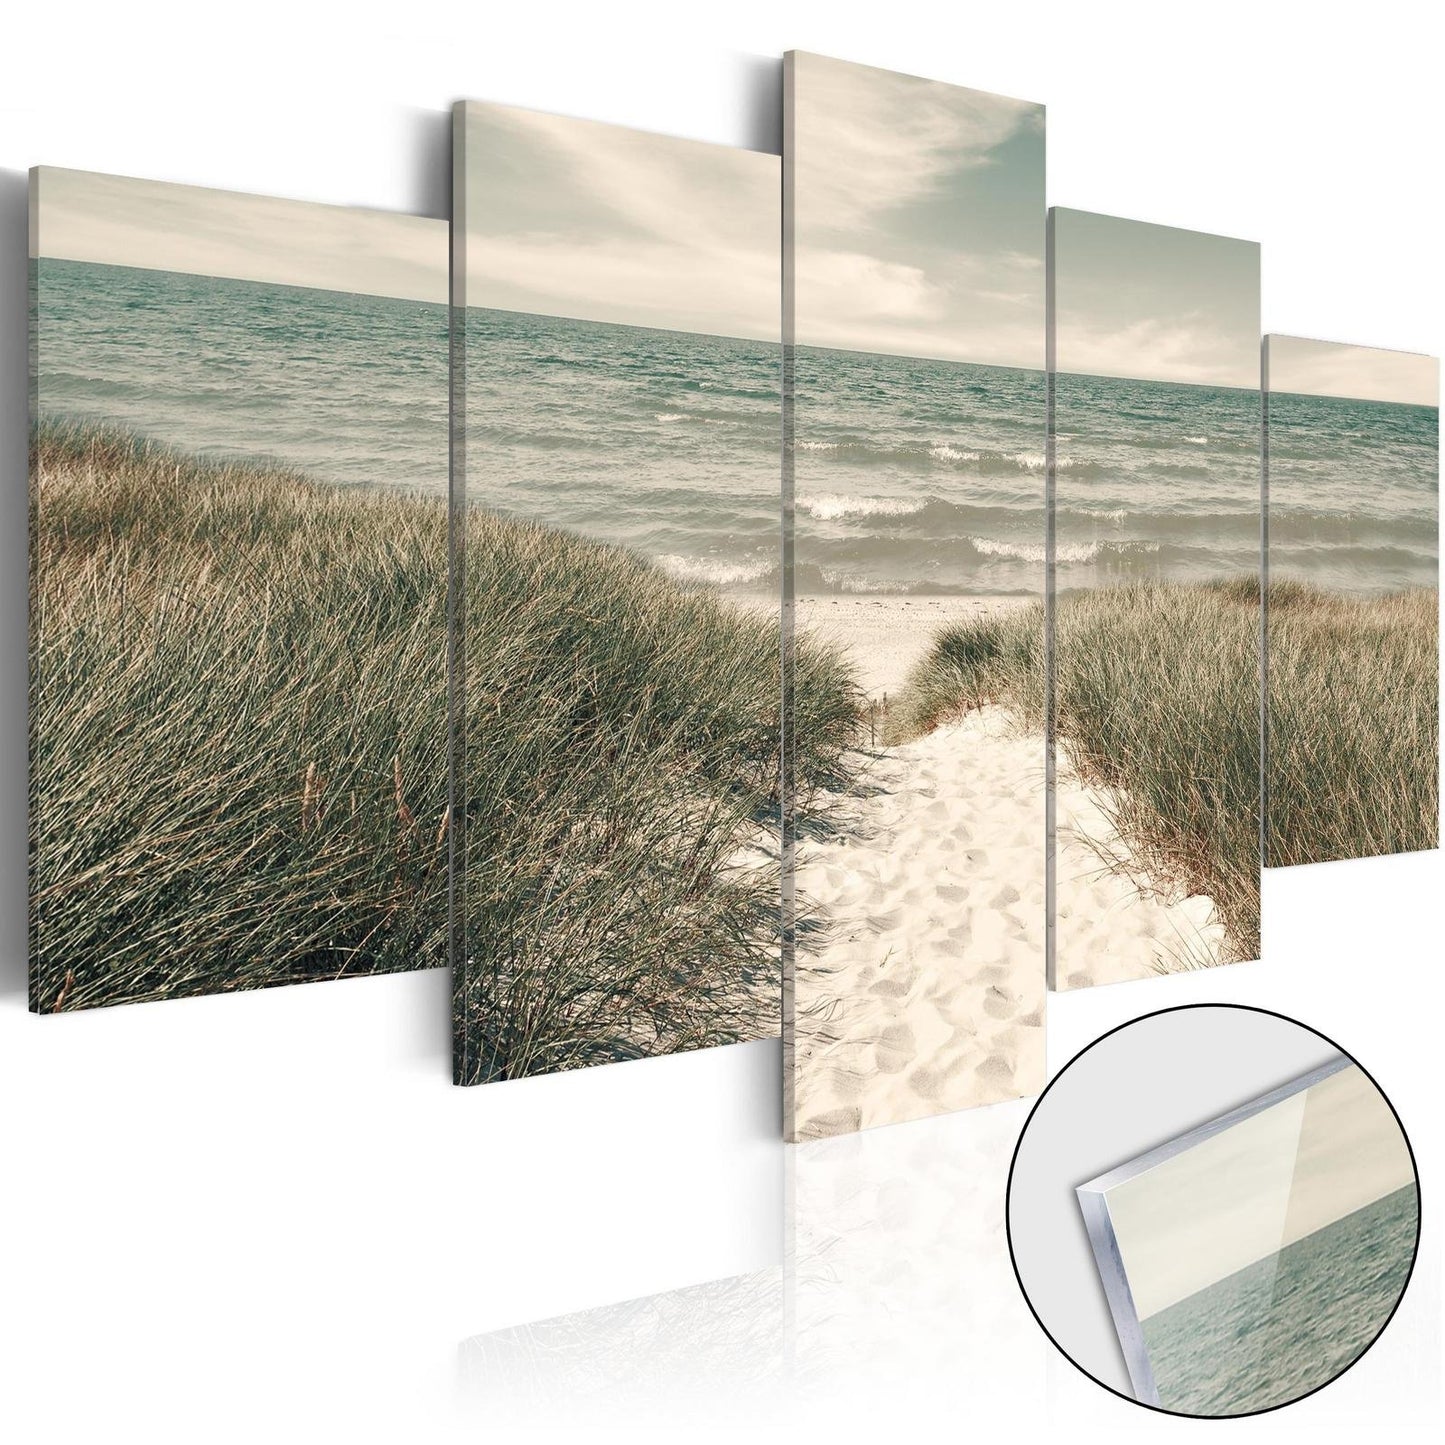 Afbeelding op acrylglas - Quiet Beach [Glass]